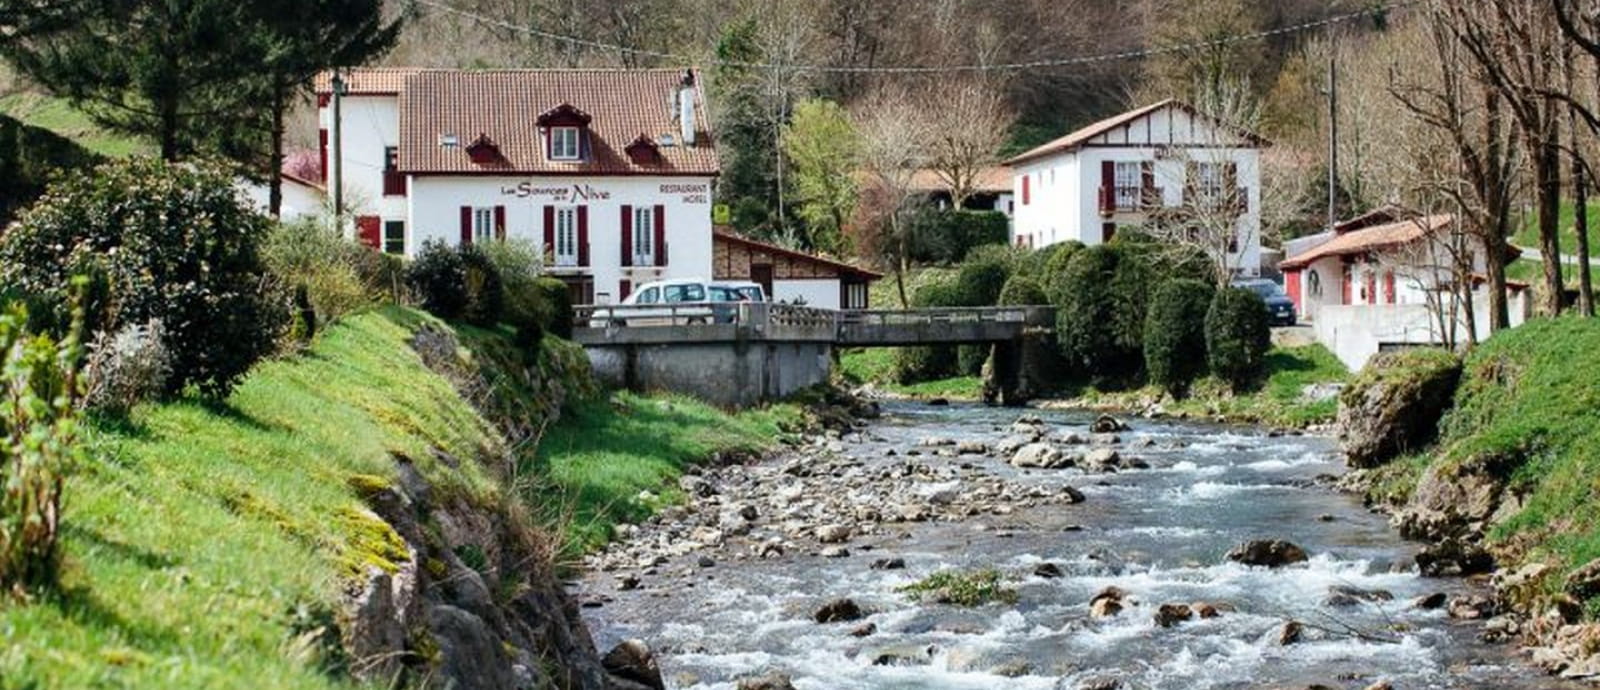 riviere Nive avec sur hôtel des sources de la nive - pays basque